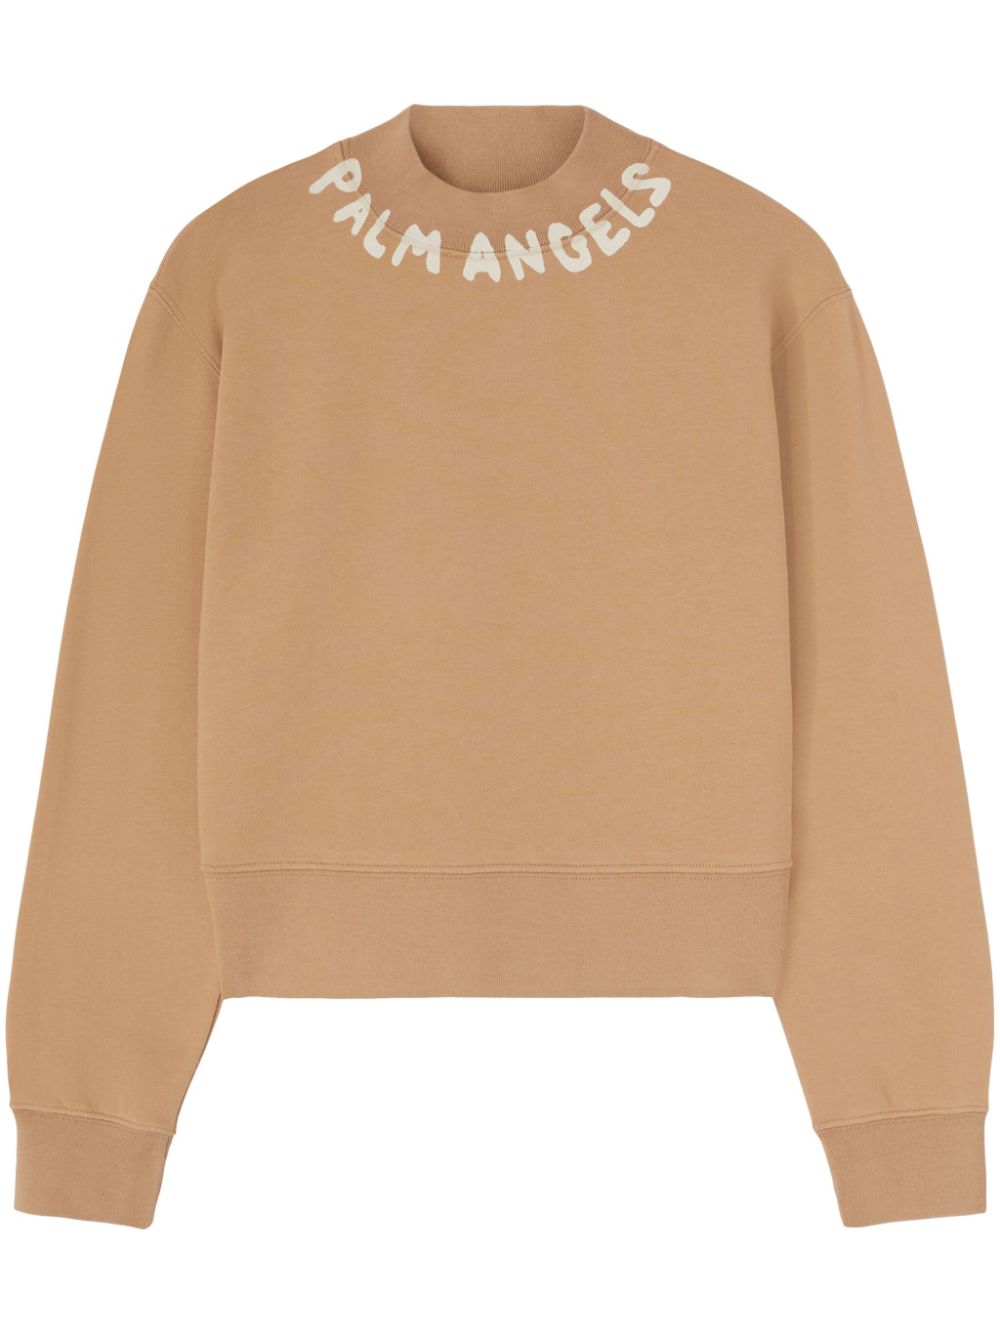 Palm Angels Seasonal Cotton Sweatshirt In Brown